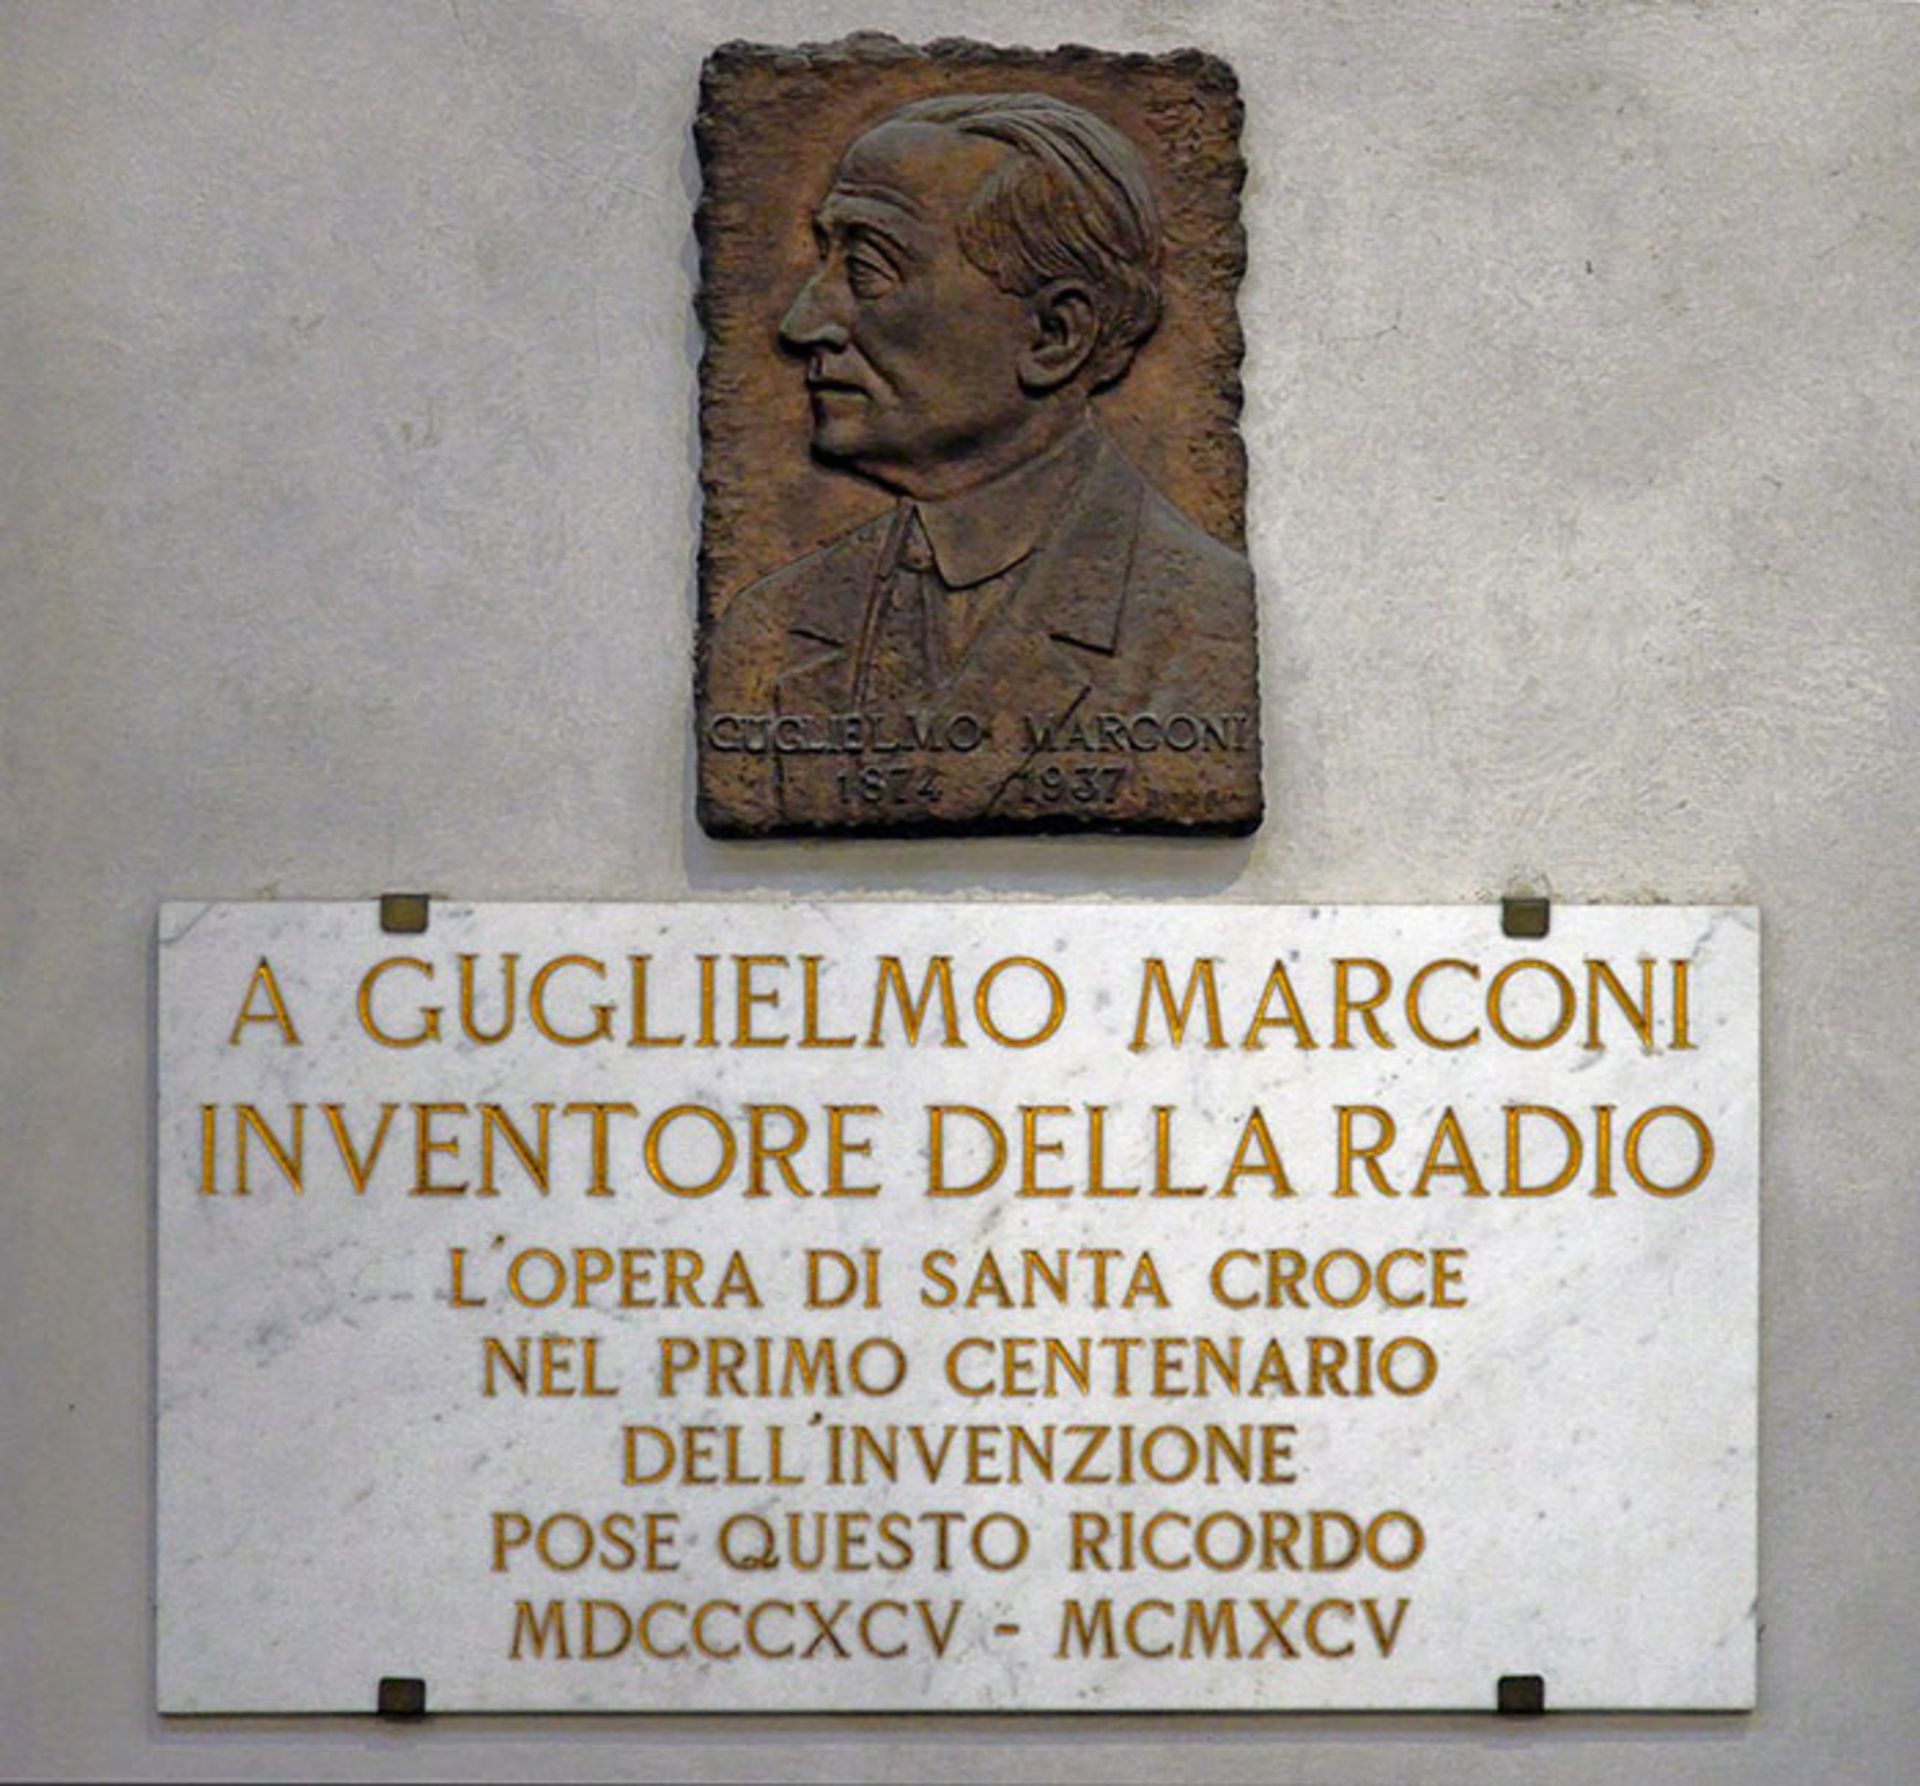 مرجع متخصصين ايران گوليلمو ماركوني / Guglielmo Markoni